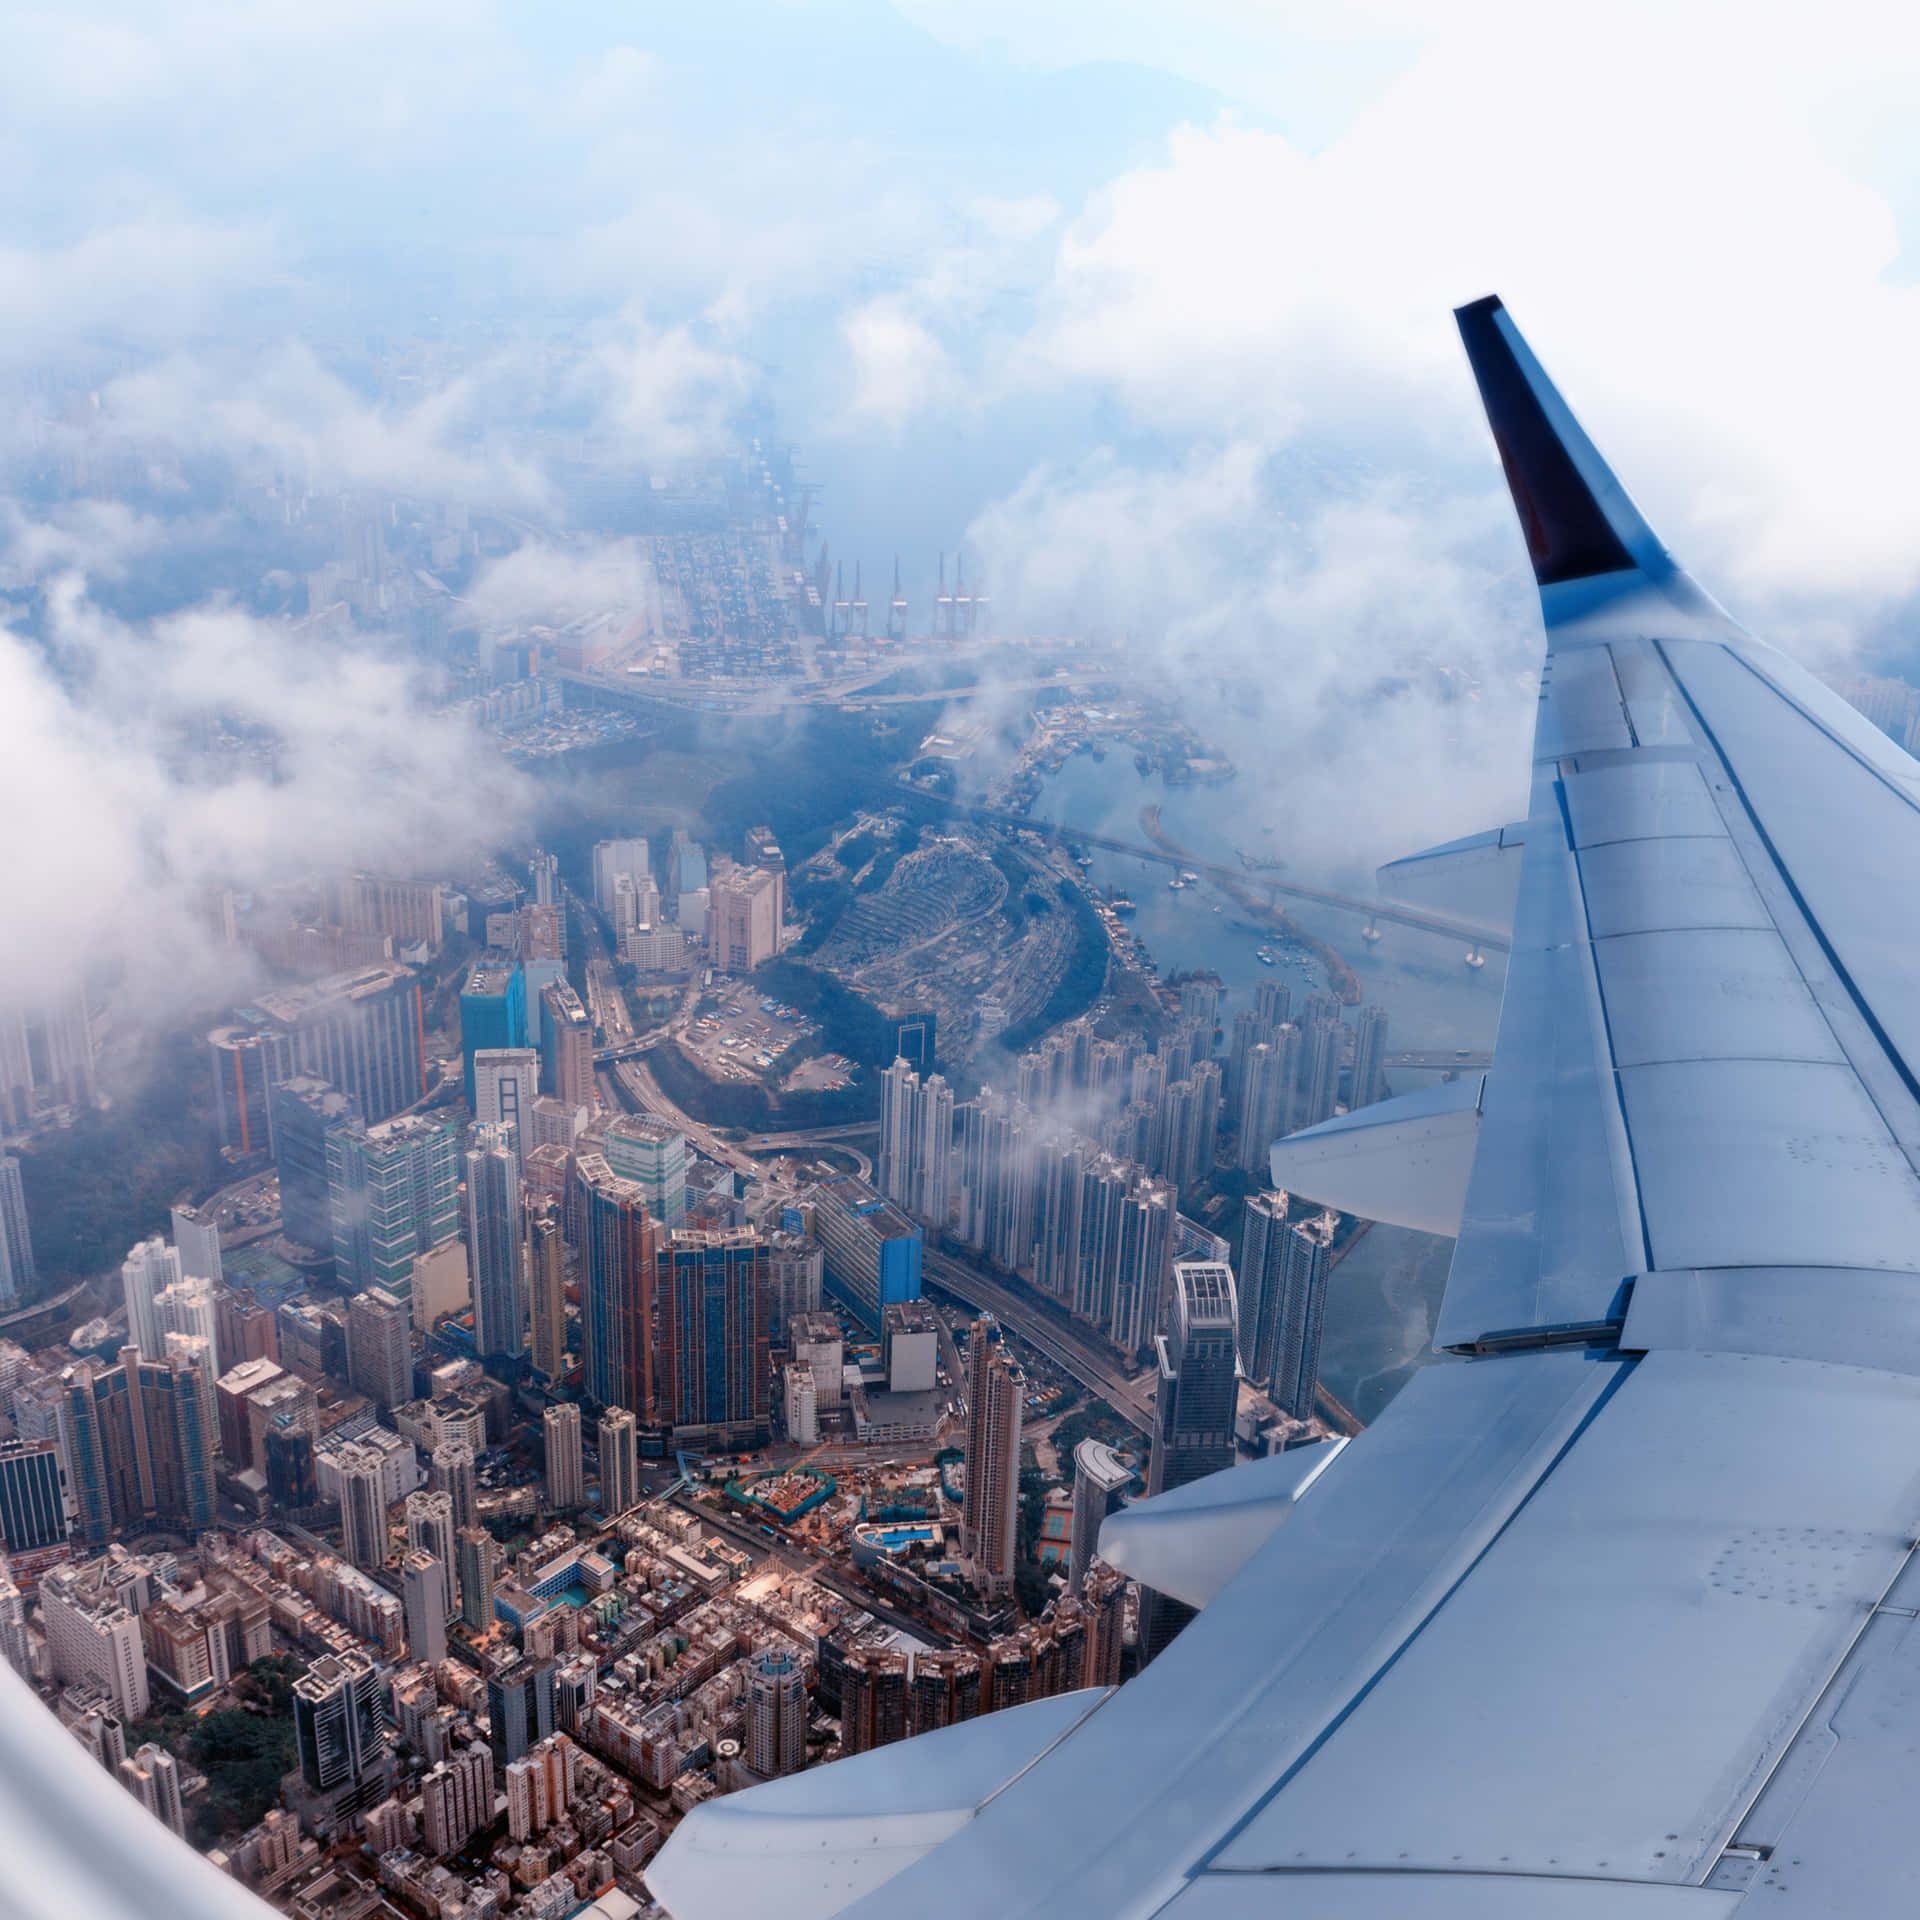 Etsmukt Luftfoto Af Et Fly, Der Flyver Over Skyerne I Den Klare, Blå Himmel.